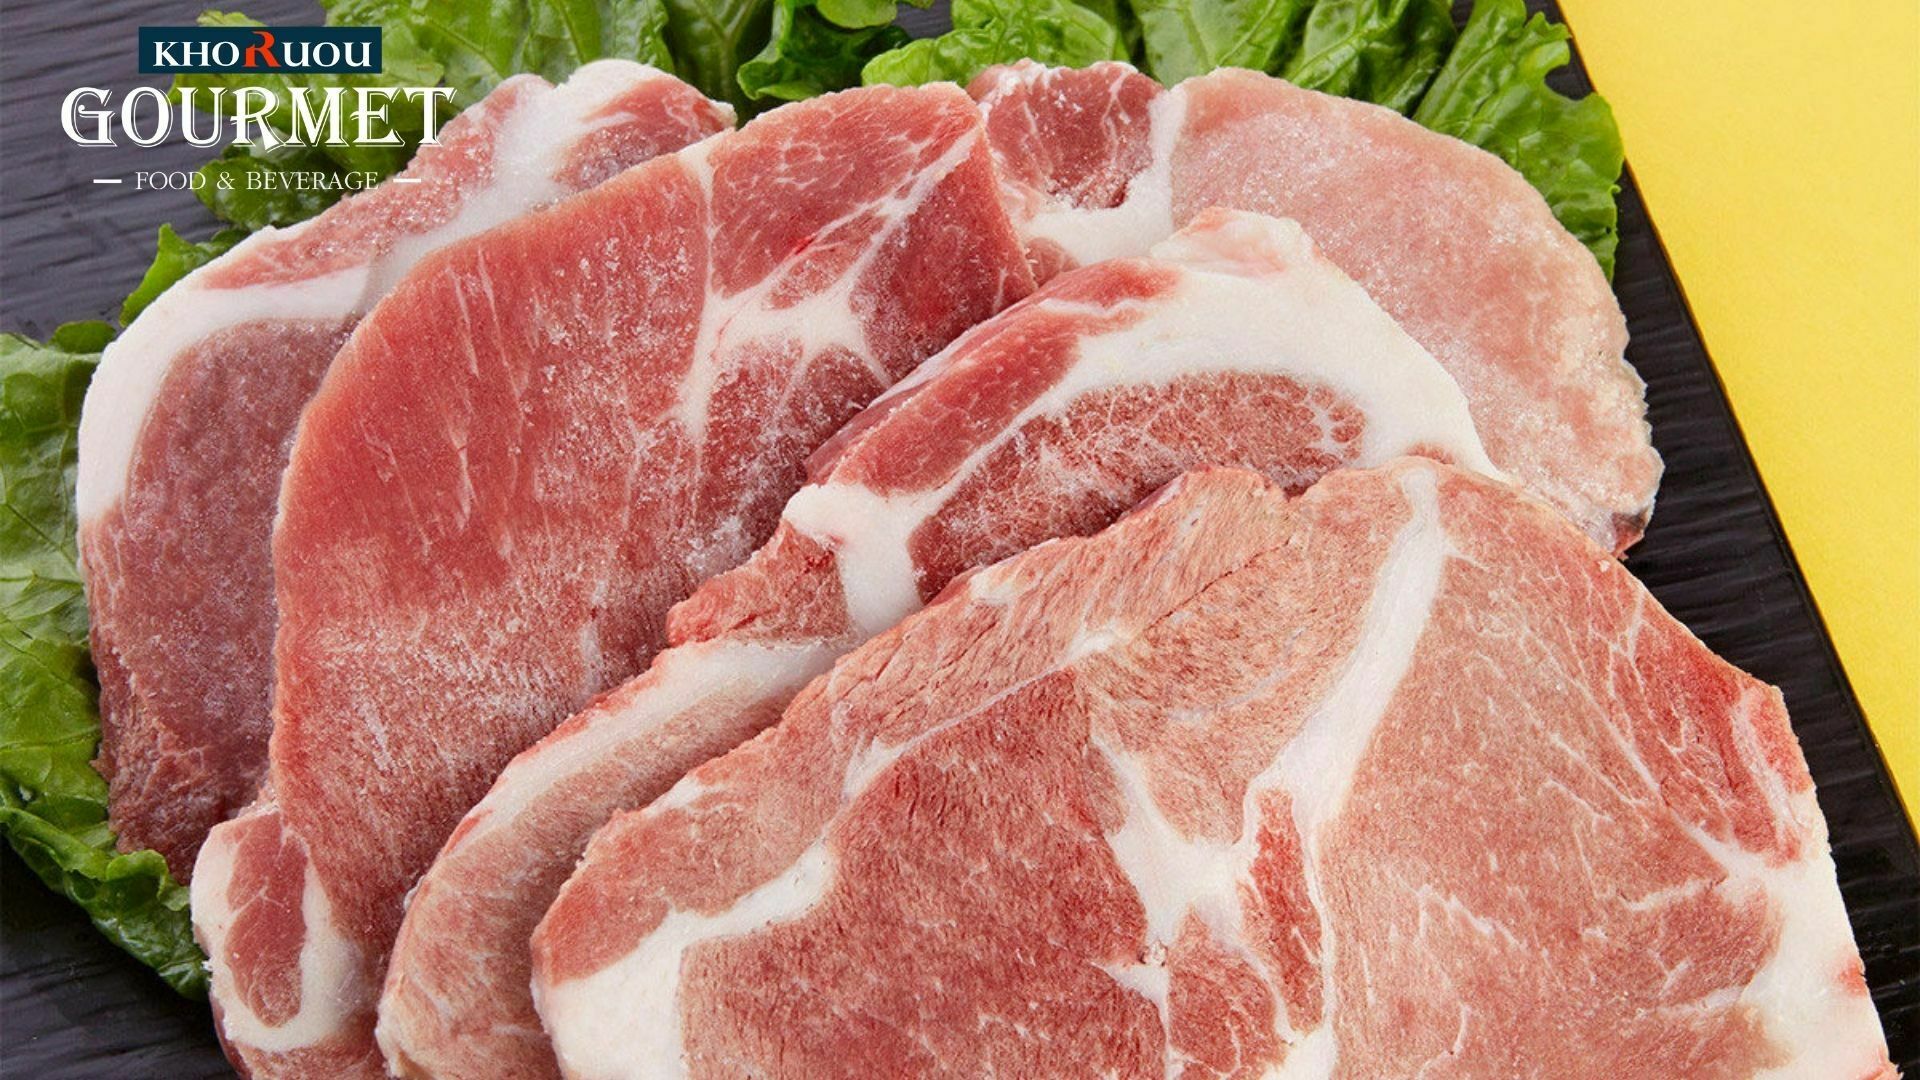 Tiêu thụ thịt lợn có hàm lượng chất béo và năng lượng cao giúp chúng ta có hệ miễn dịch tốt, bảo vệ cơ thể khỏi các vấn đề khác nhau. Qua đó, có thể thấy rằng, thịt lợn đem lại nhiều lợi ích bất ngờ nếu bổ sung một cách khoa học.